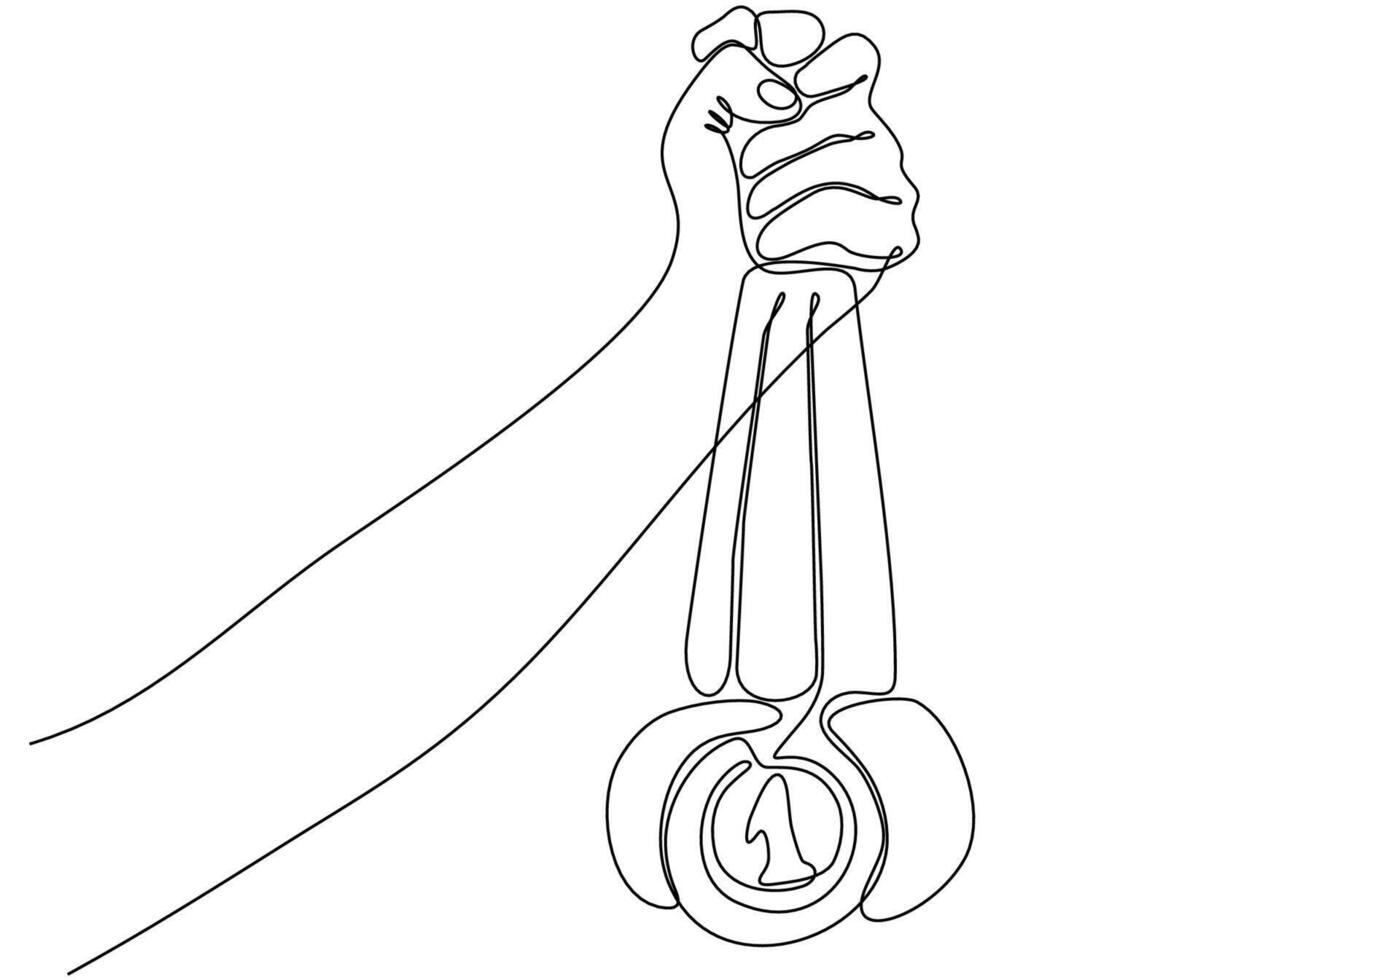 un dessin au trait d'une main humaine vintage tenant un croquis de ruban avec une médaille d'or. concept de design d'emblème dans un style rétro isolé sur fond blanc. illustration graphique vectorielle de dessin au trait continu vecteur